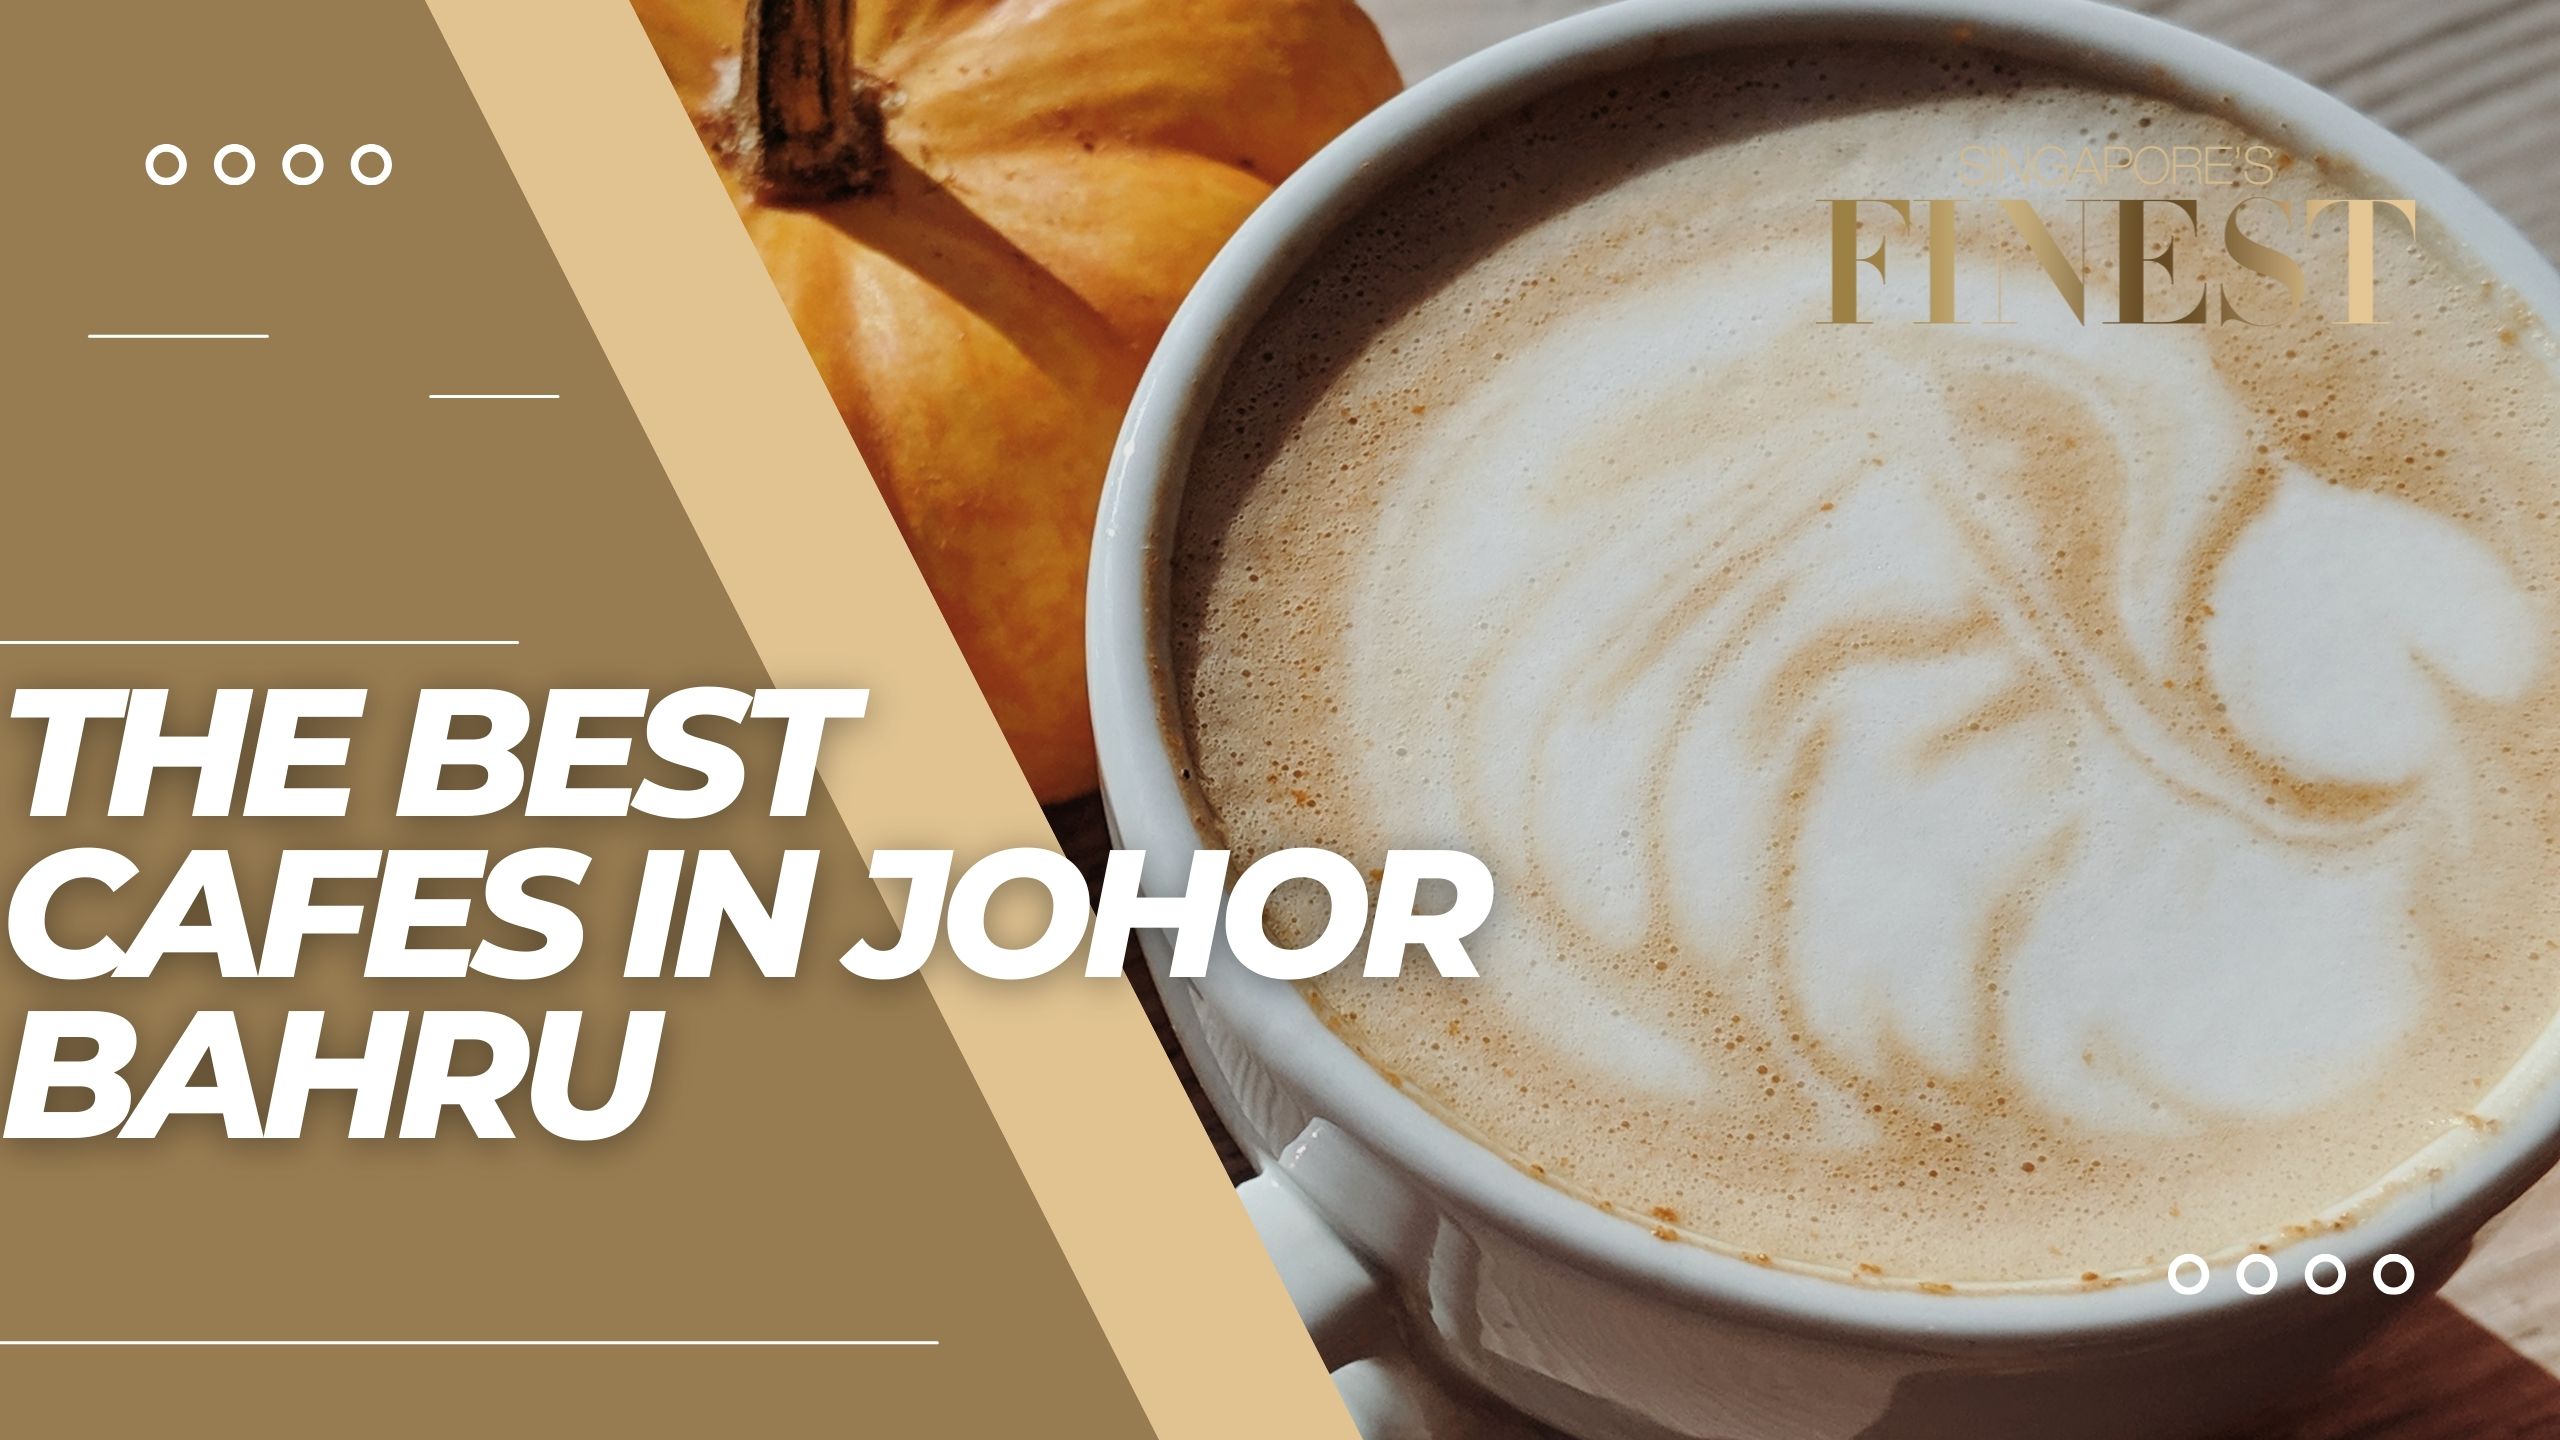 The Finest Cafes in Johor Bahru